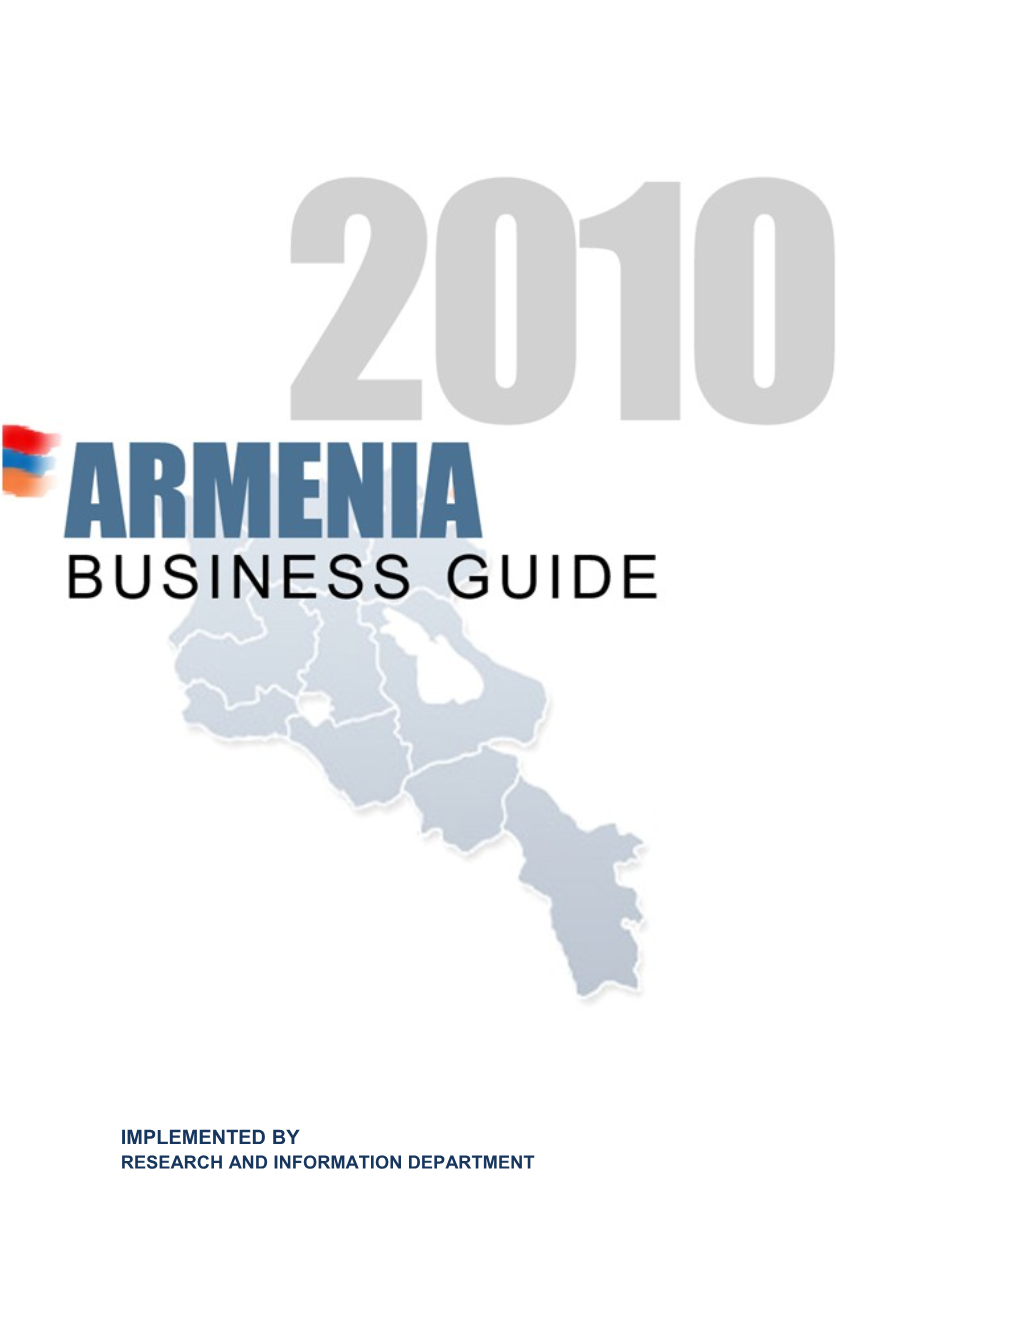 Armenia: Business Guide 2010 1